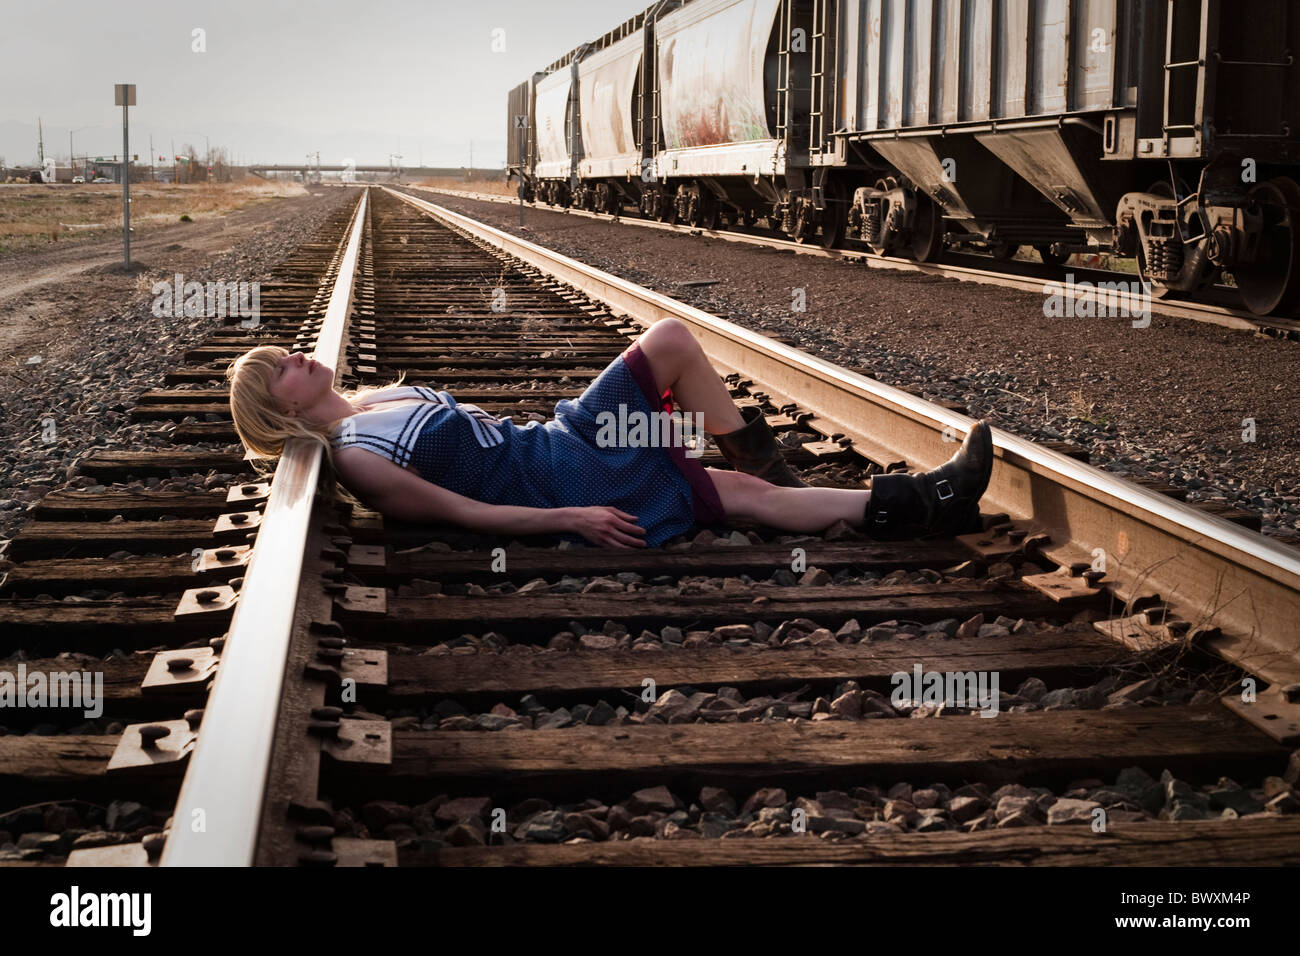 Jungfrau in Nöten legt auf Eisenbahnschienen im amerikanischen Westen Stockfoto